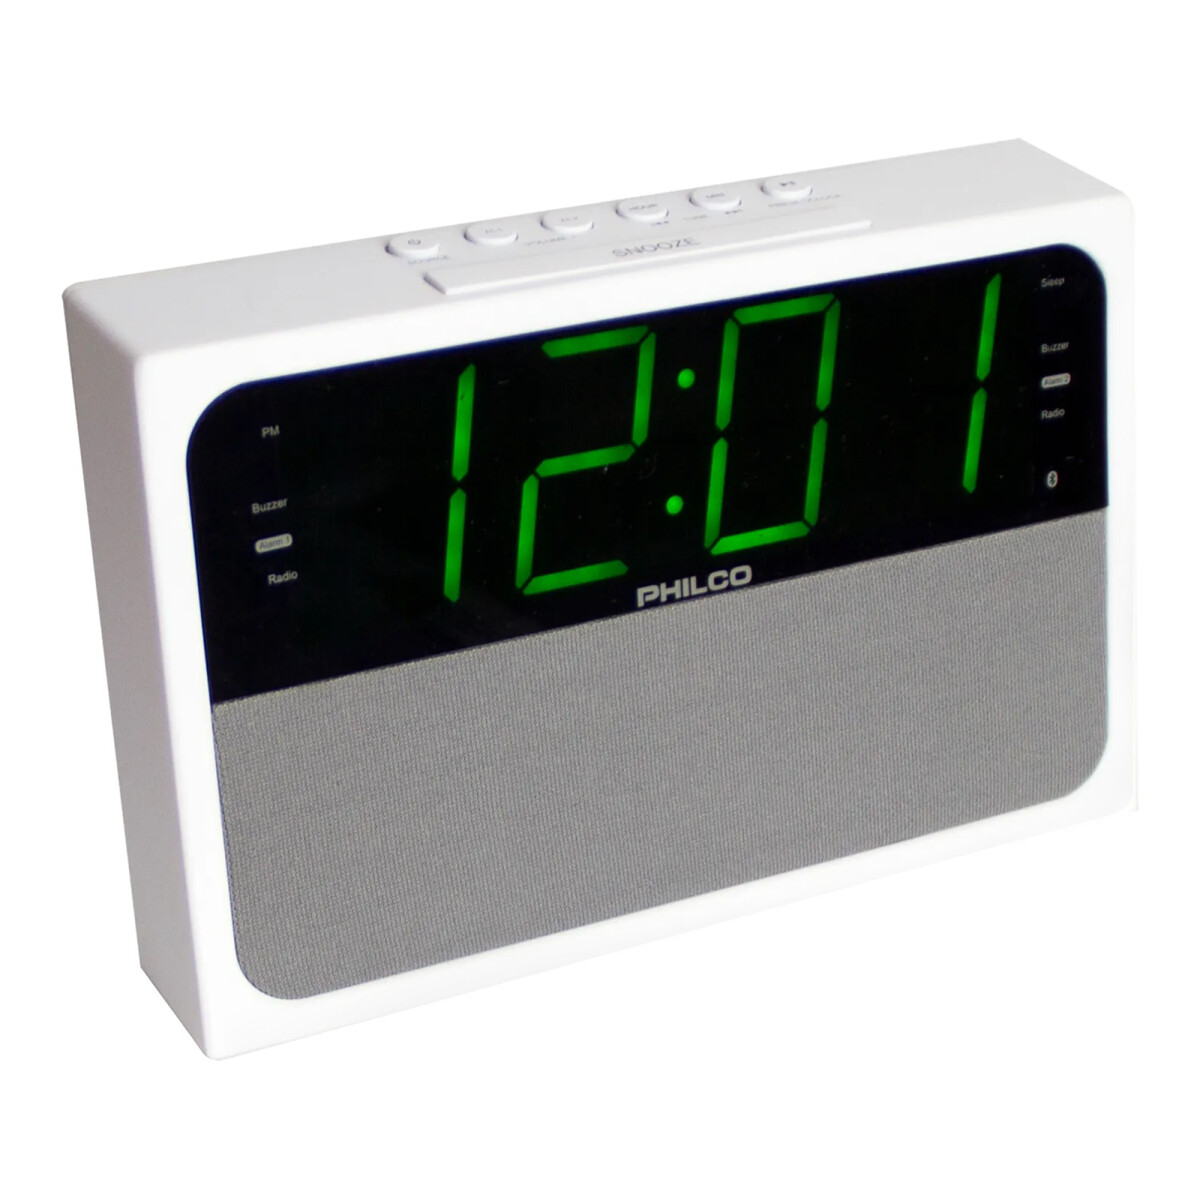 Philco - Radio Despertador PAR1018BT - Bluetooth. Fm Digital. 20 Memorias. Botón Snooze. - 001 